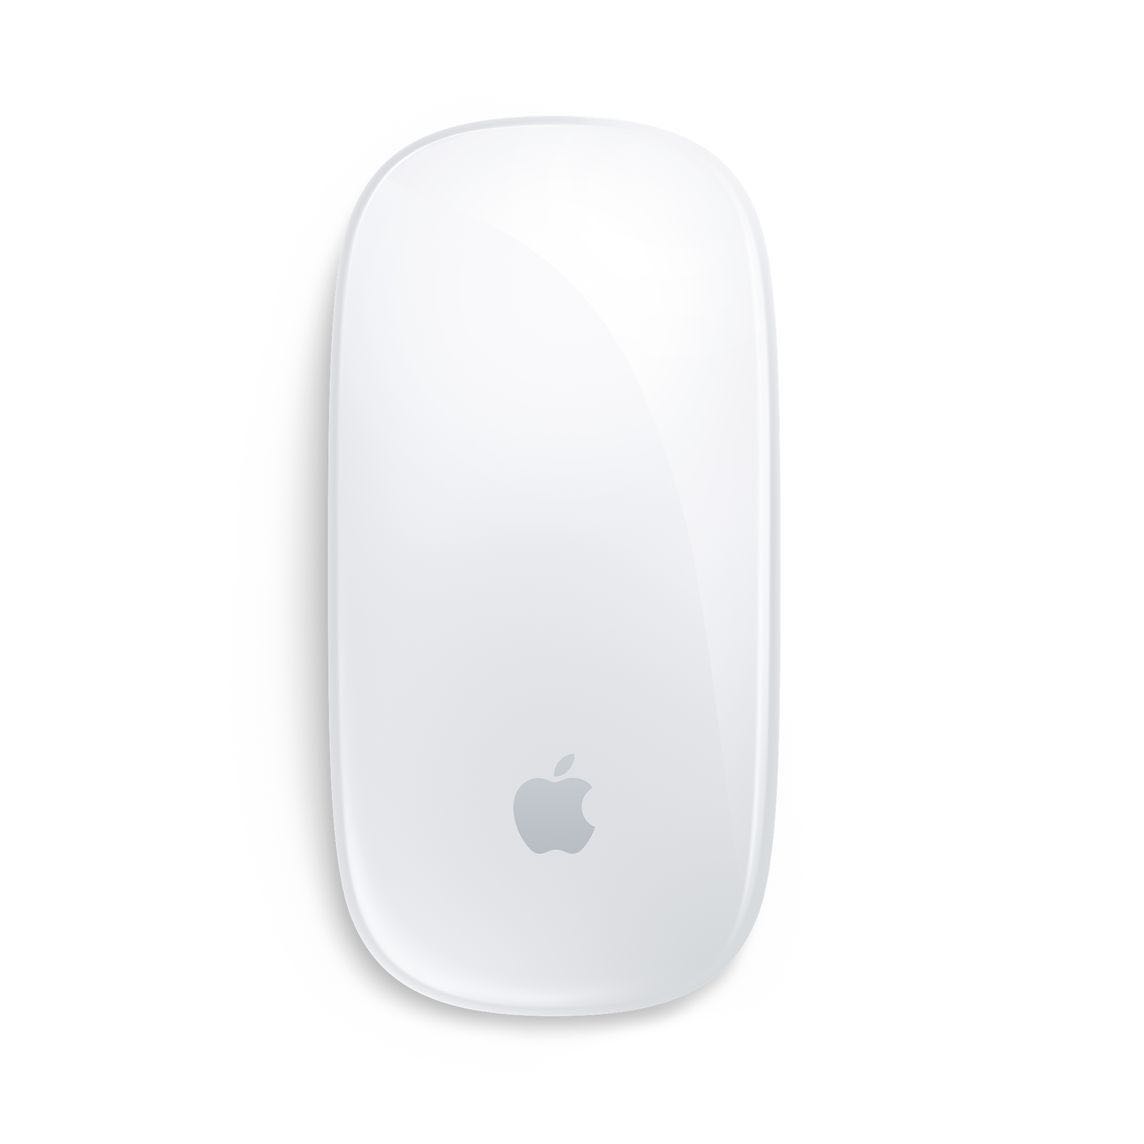 有券的上：Apple 苹果 Magic Mouse 2 无线鼠标 白色 385元包邮（需用券）